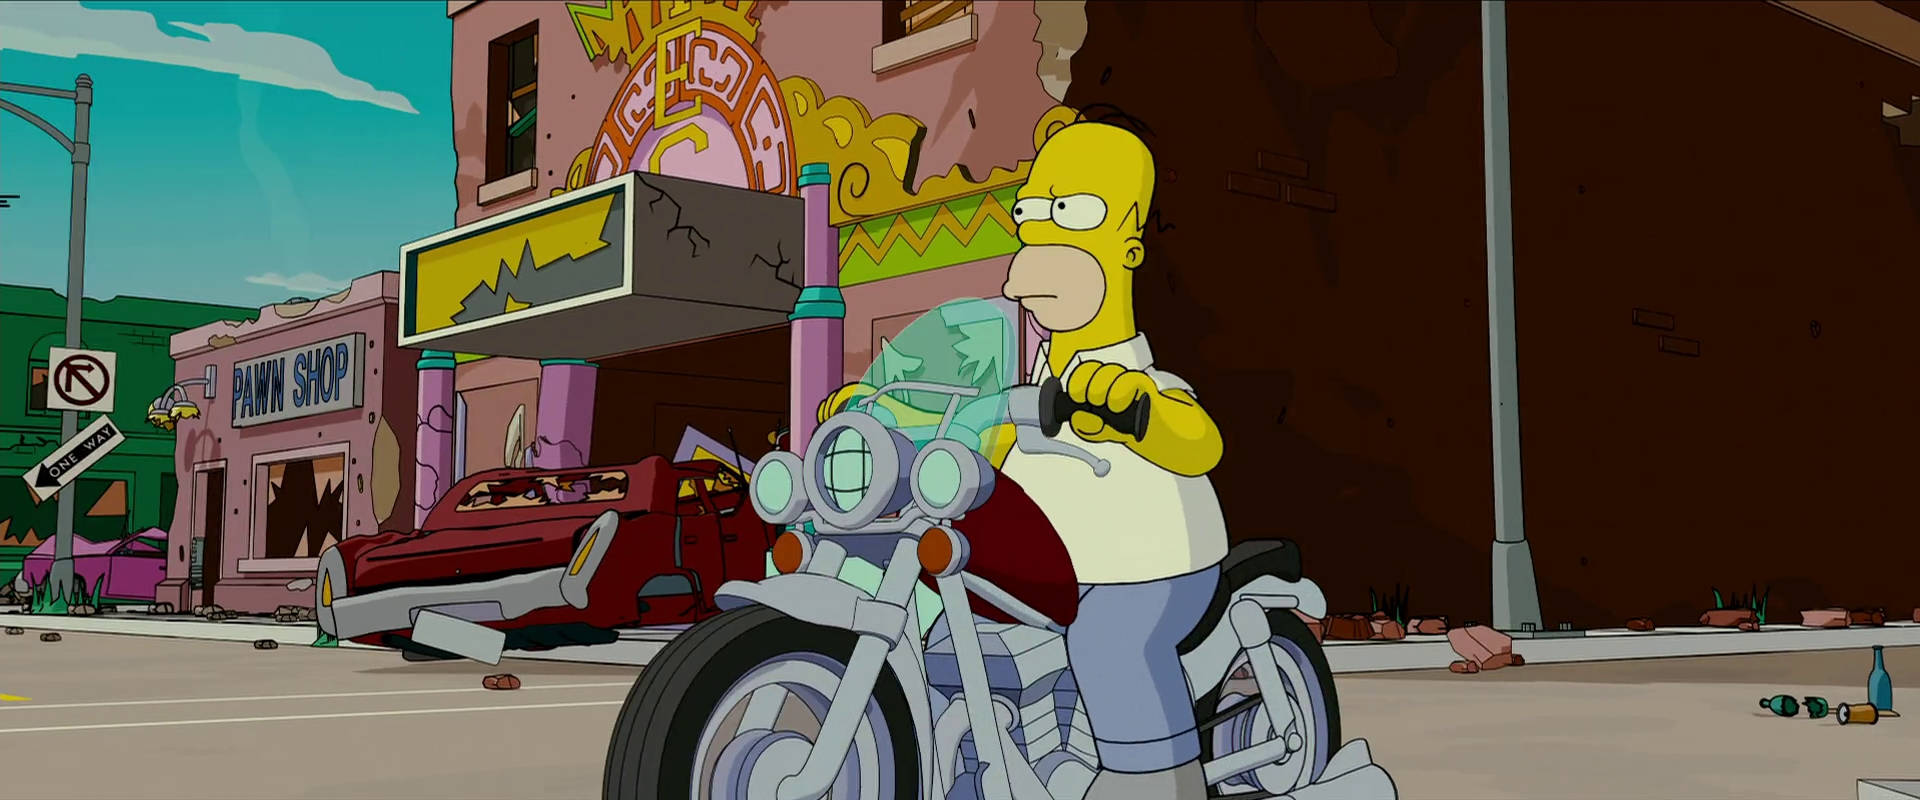 Homersimpson Auf Dem Motorrad Die Simpsons - Der Film Wallpaper